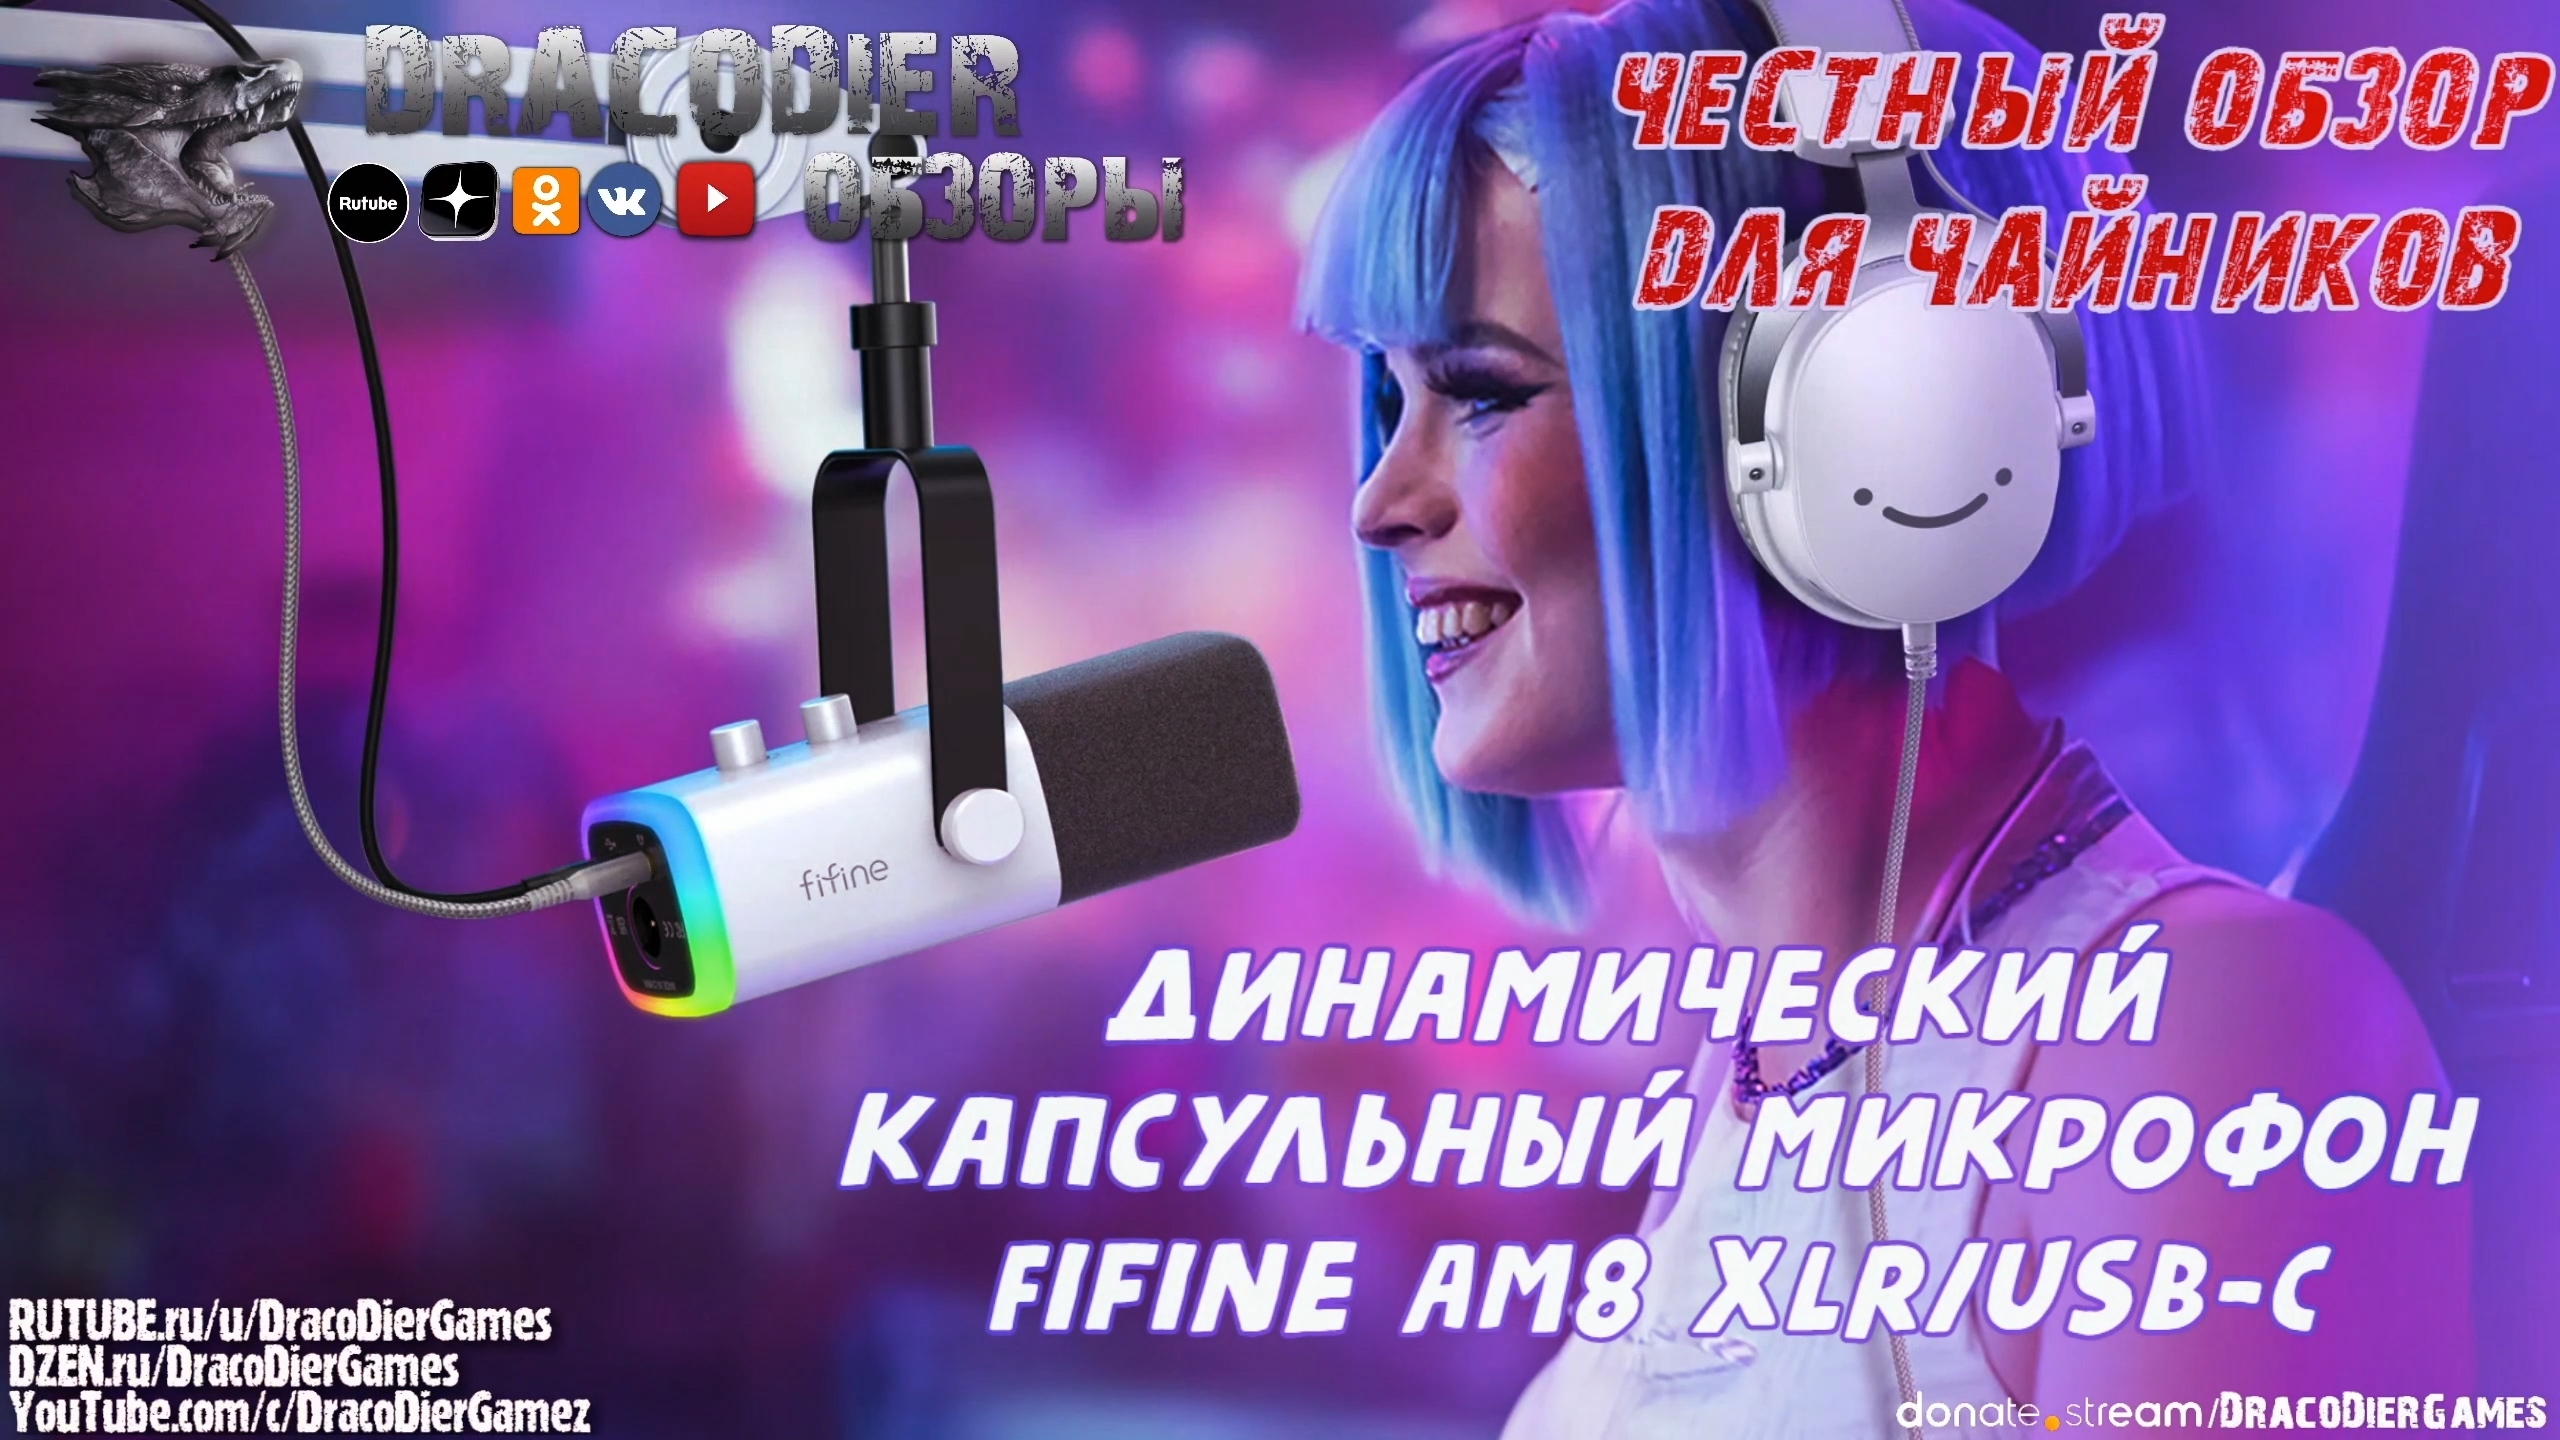 Честный обзор ► Капсульный конденсаторный микрофон Fifine AM8 XLR/USB-C